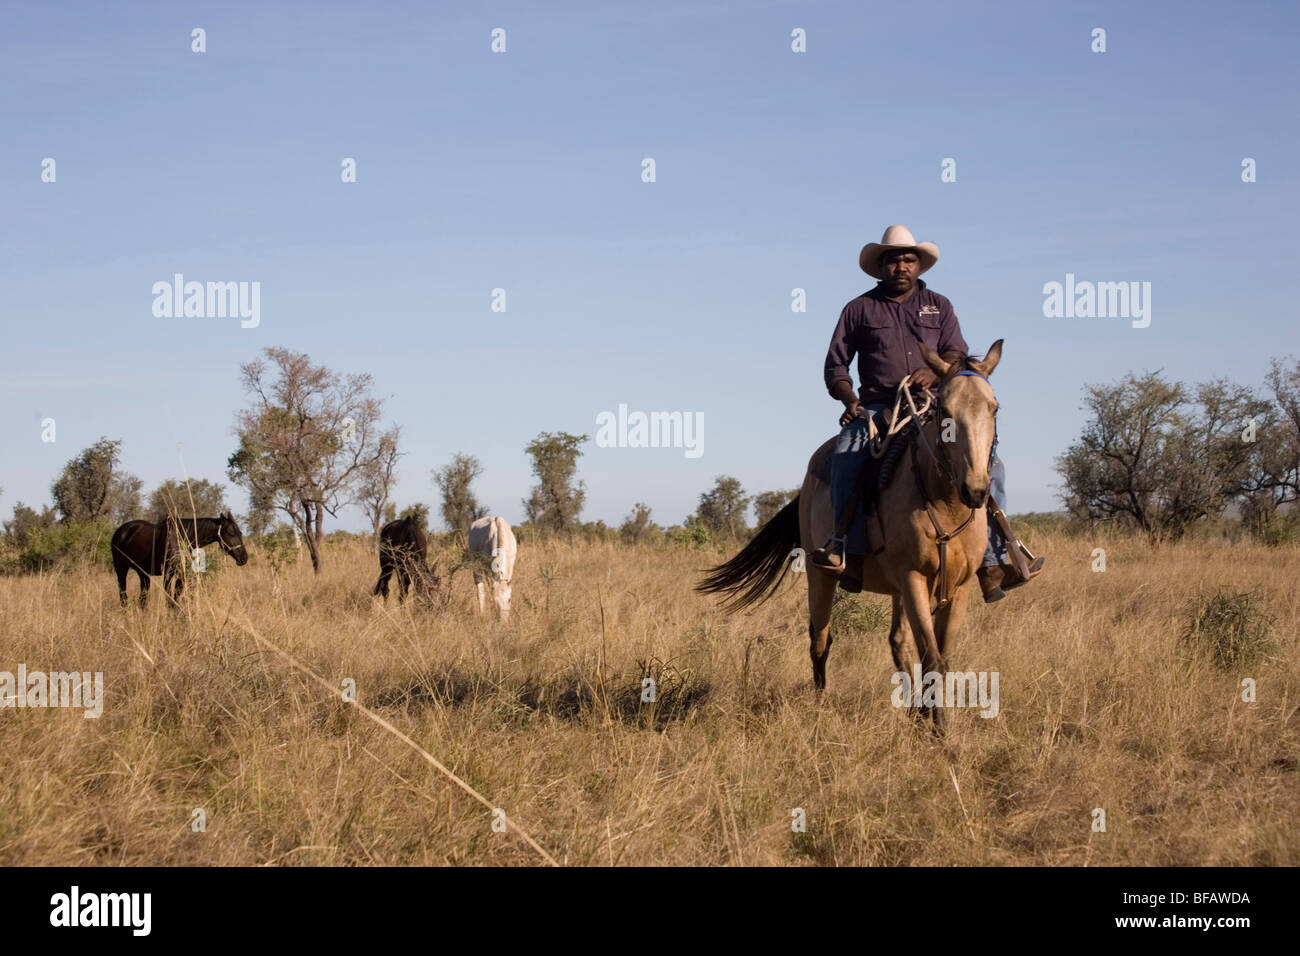 Home Valley Station stockman rassemblement autochtone à cheval dans l'ouest de l'Australie Kimberley la Gibb River Road en Australie Banque D'Images